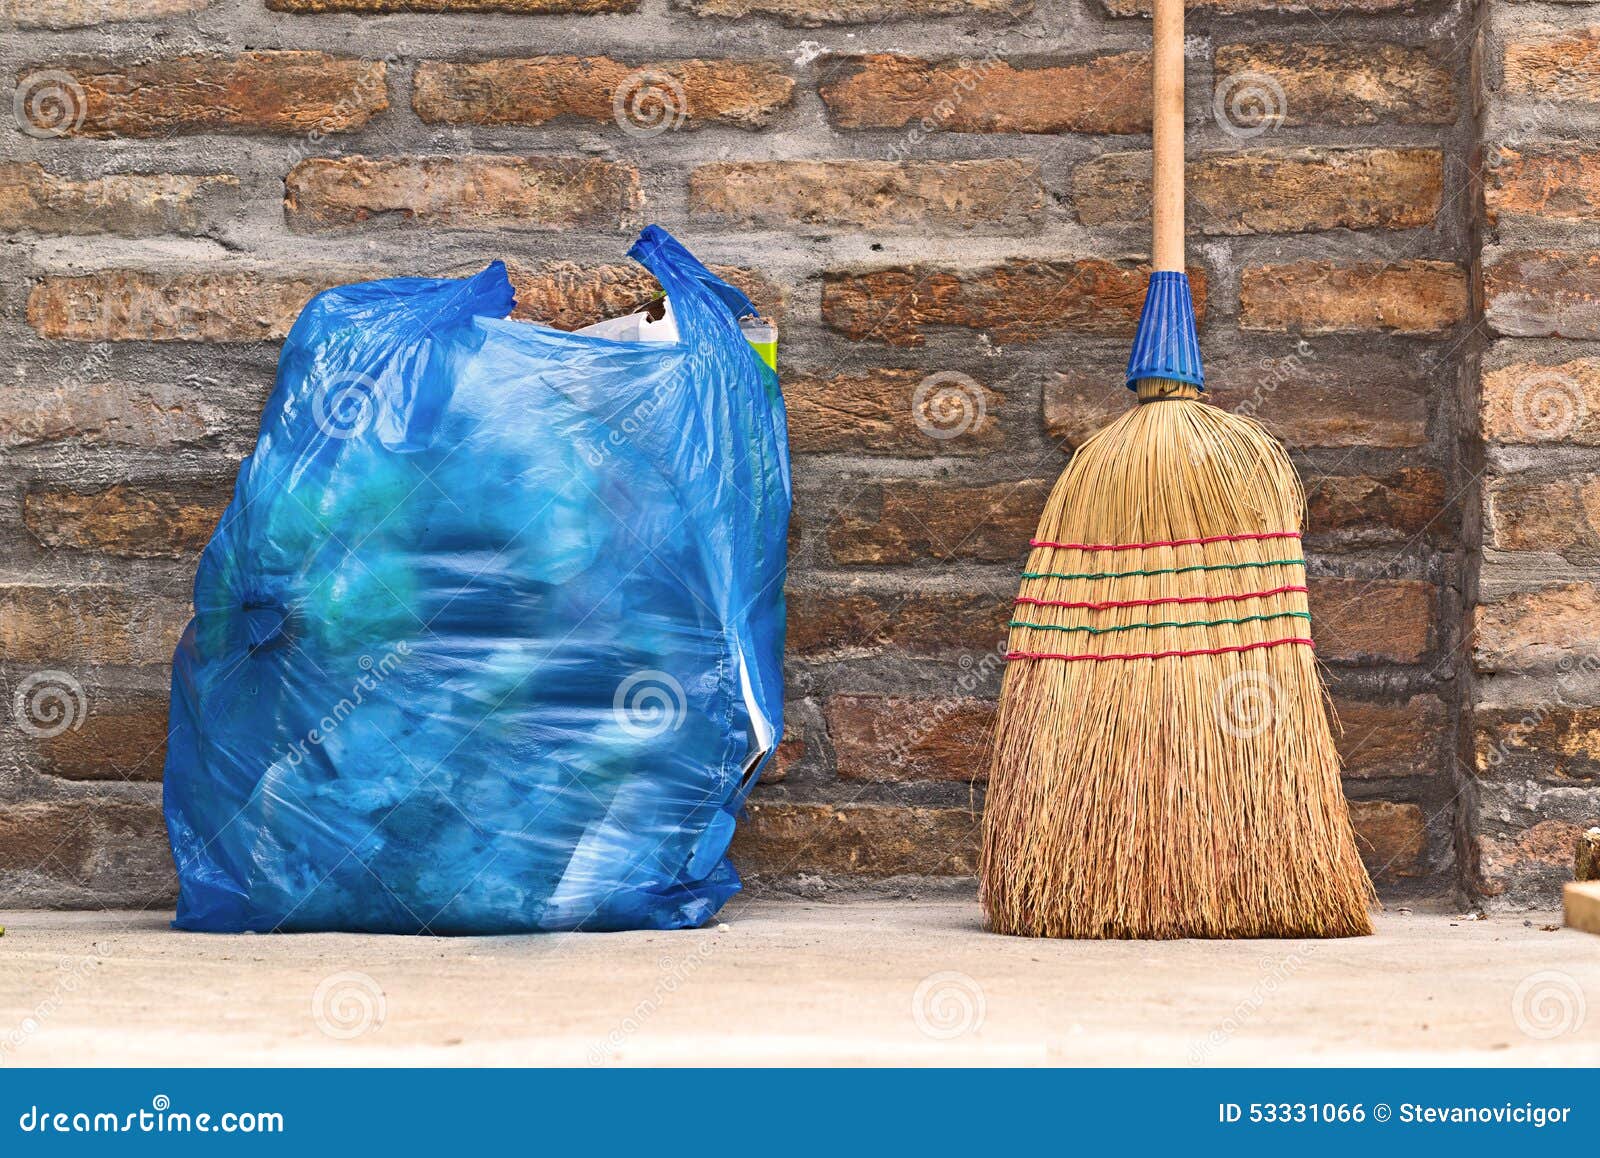 Веник домочадца для сумки чистки и отброса пола. Веник используемый домочадцем для чистки пыли пола и голубой пластичной сумки отброса, горизонтальный